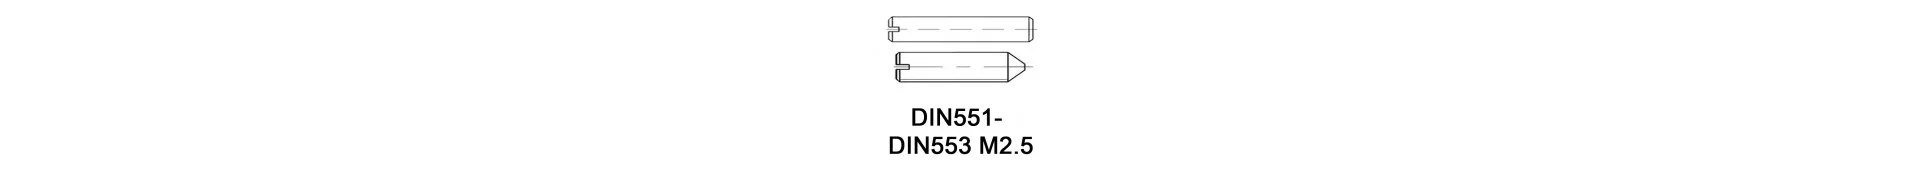 DIN551 - DIN553 M2.5